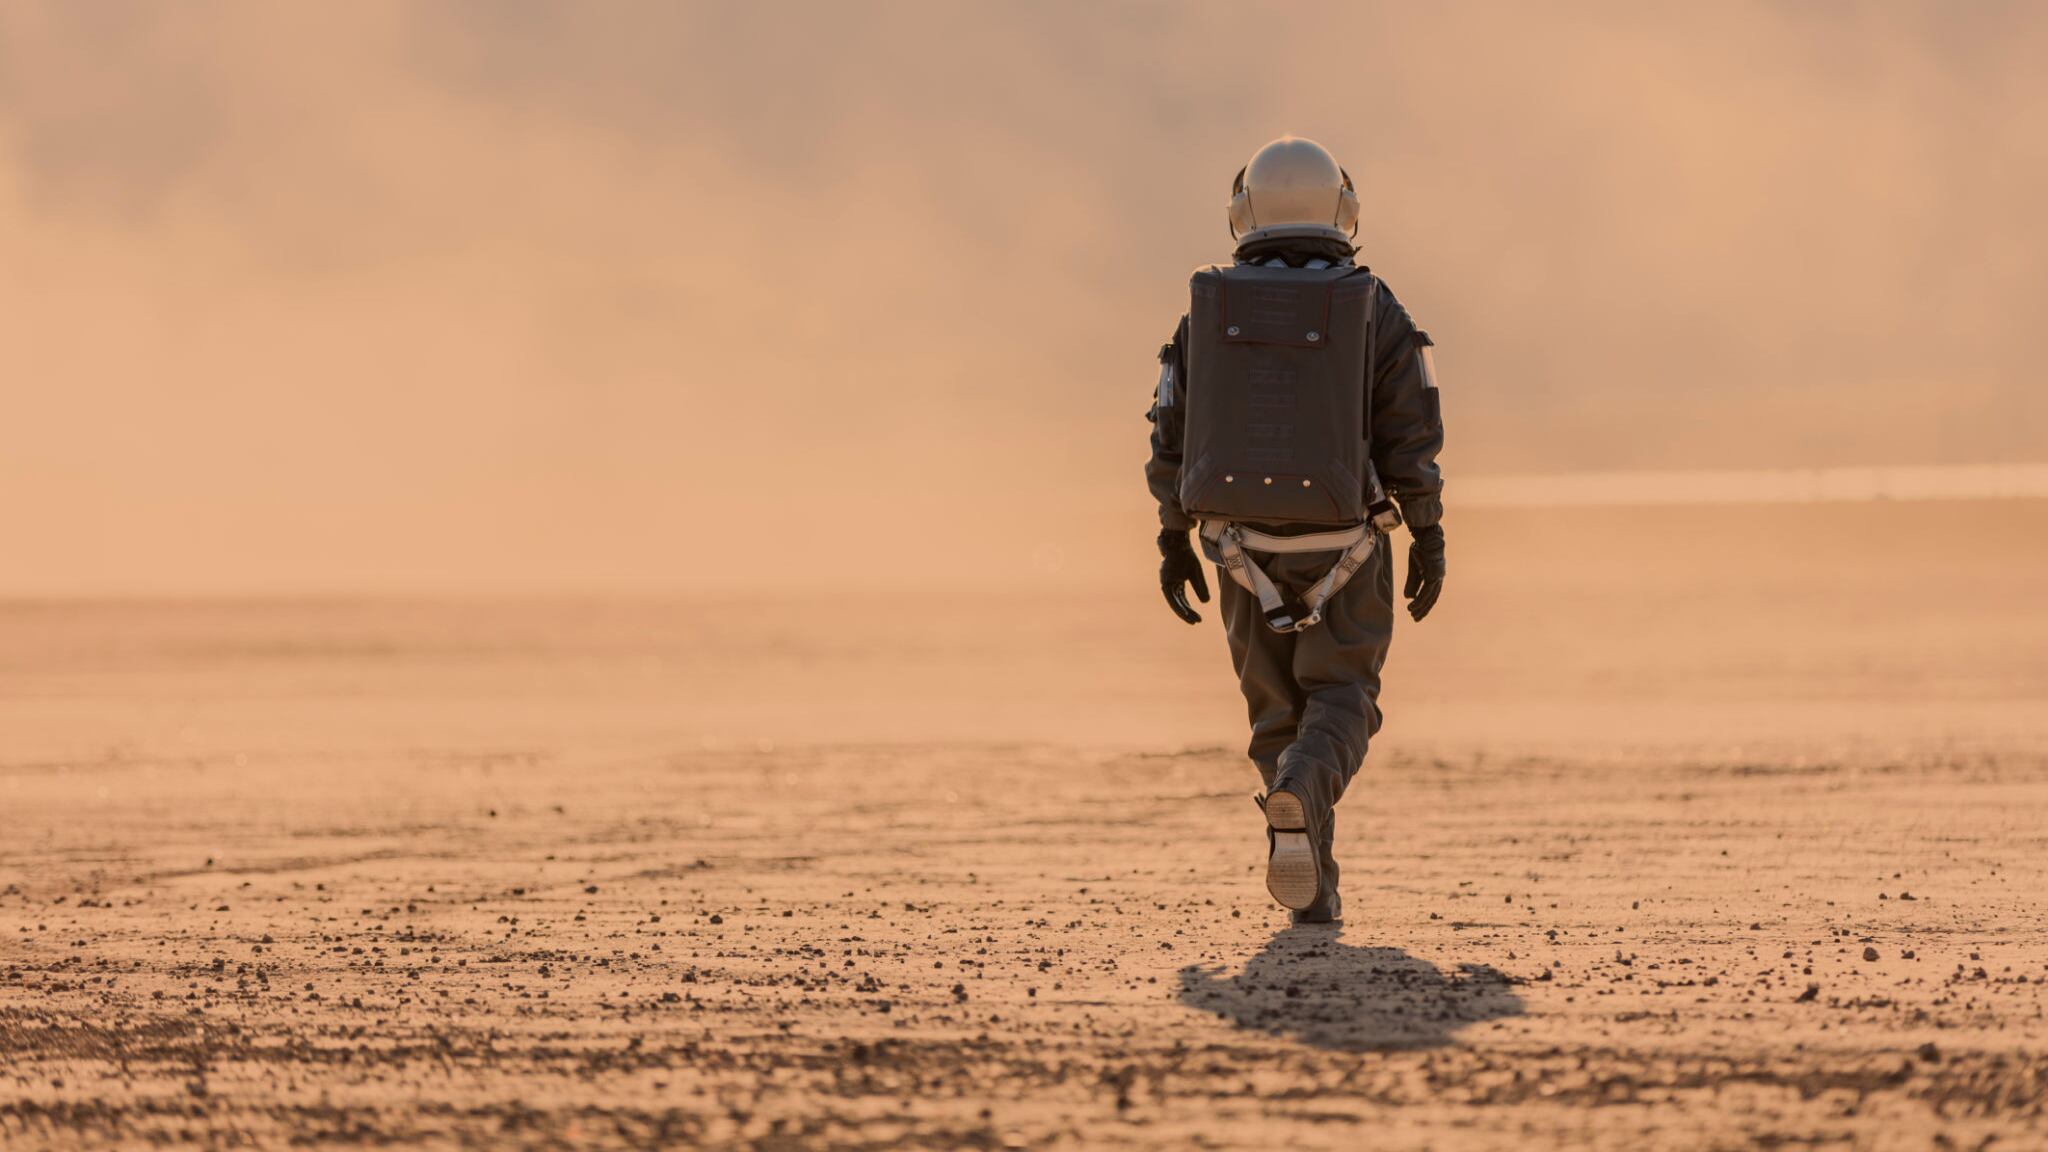 El futuro de la exploración espacial apunta a la colonización de Marte.